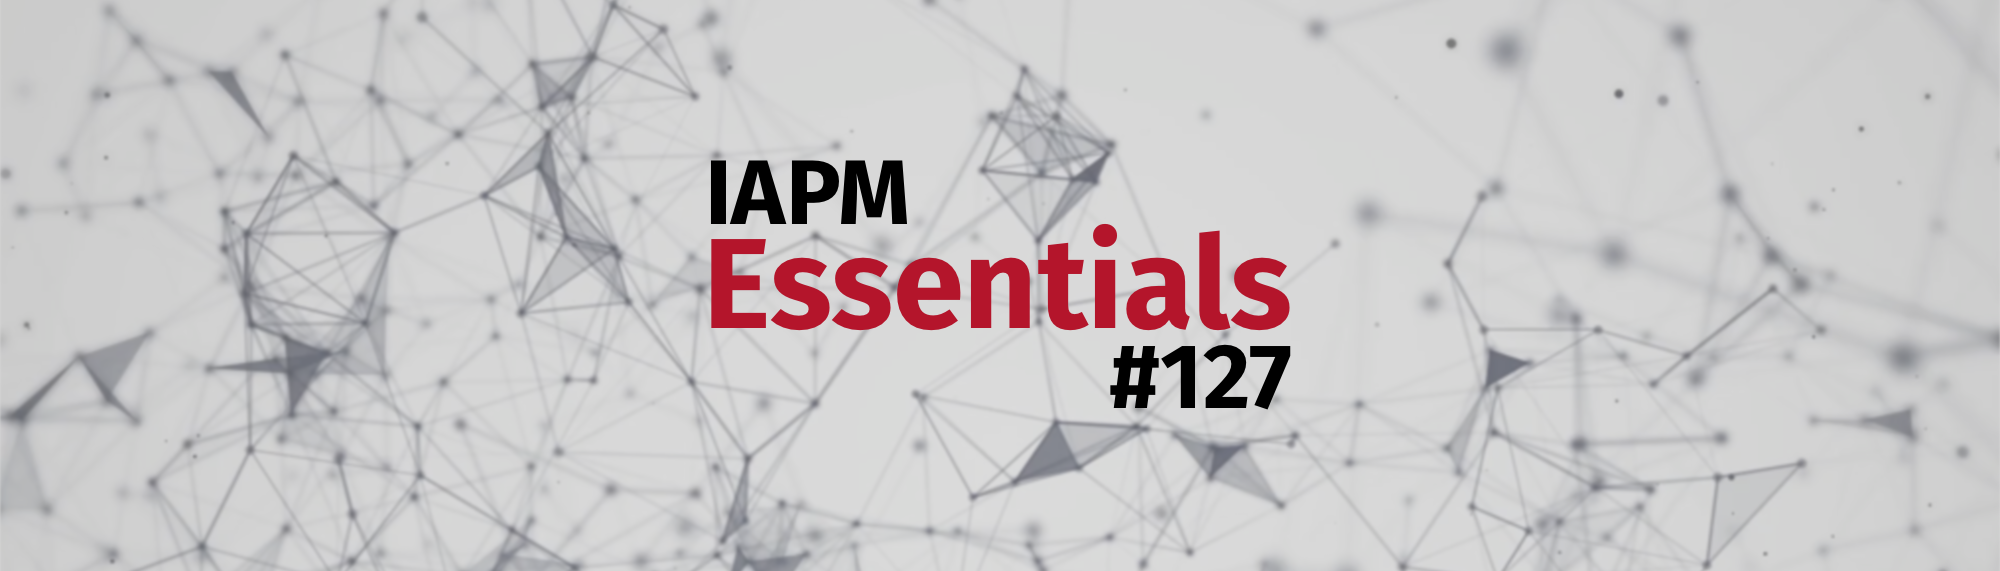 IAPM Essentials #127 - PM news | IAPM